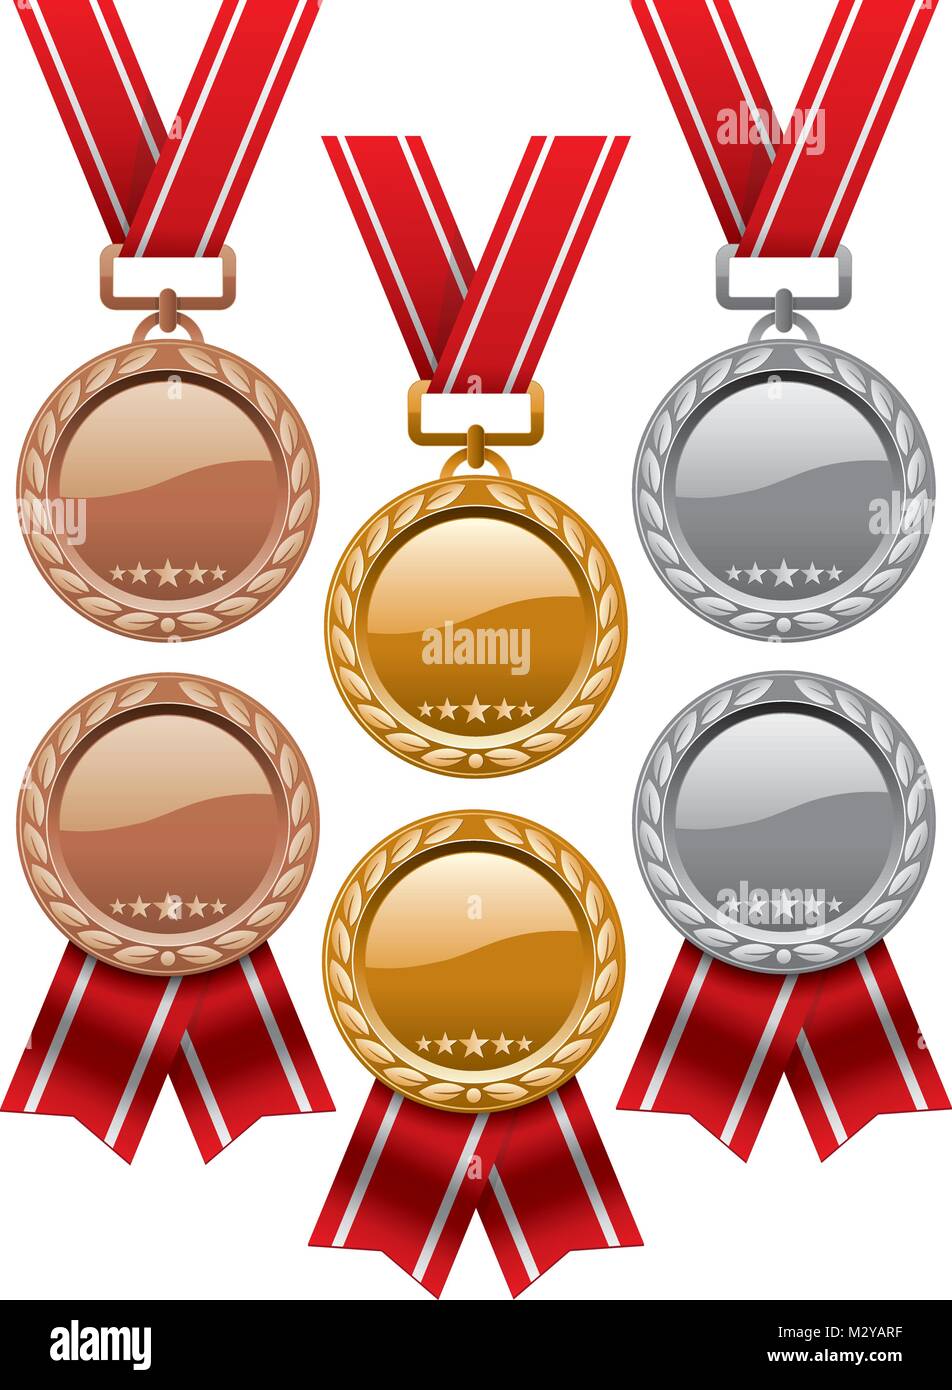 Vektor einrichten von Gold-, Silber- und Bronzemedaillen mit roten Bändern auf weißem Hintergrund. glänzende Medaille Symbole. Eps 10 Abbildung Stock Vektor